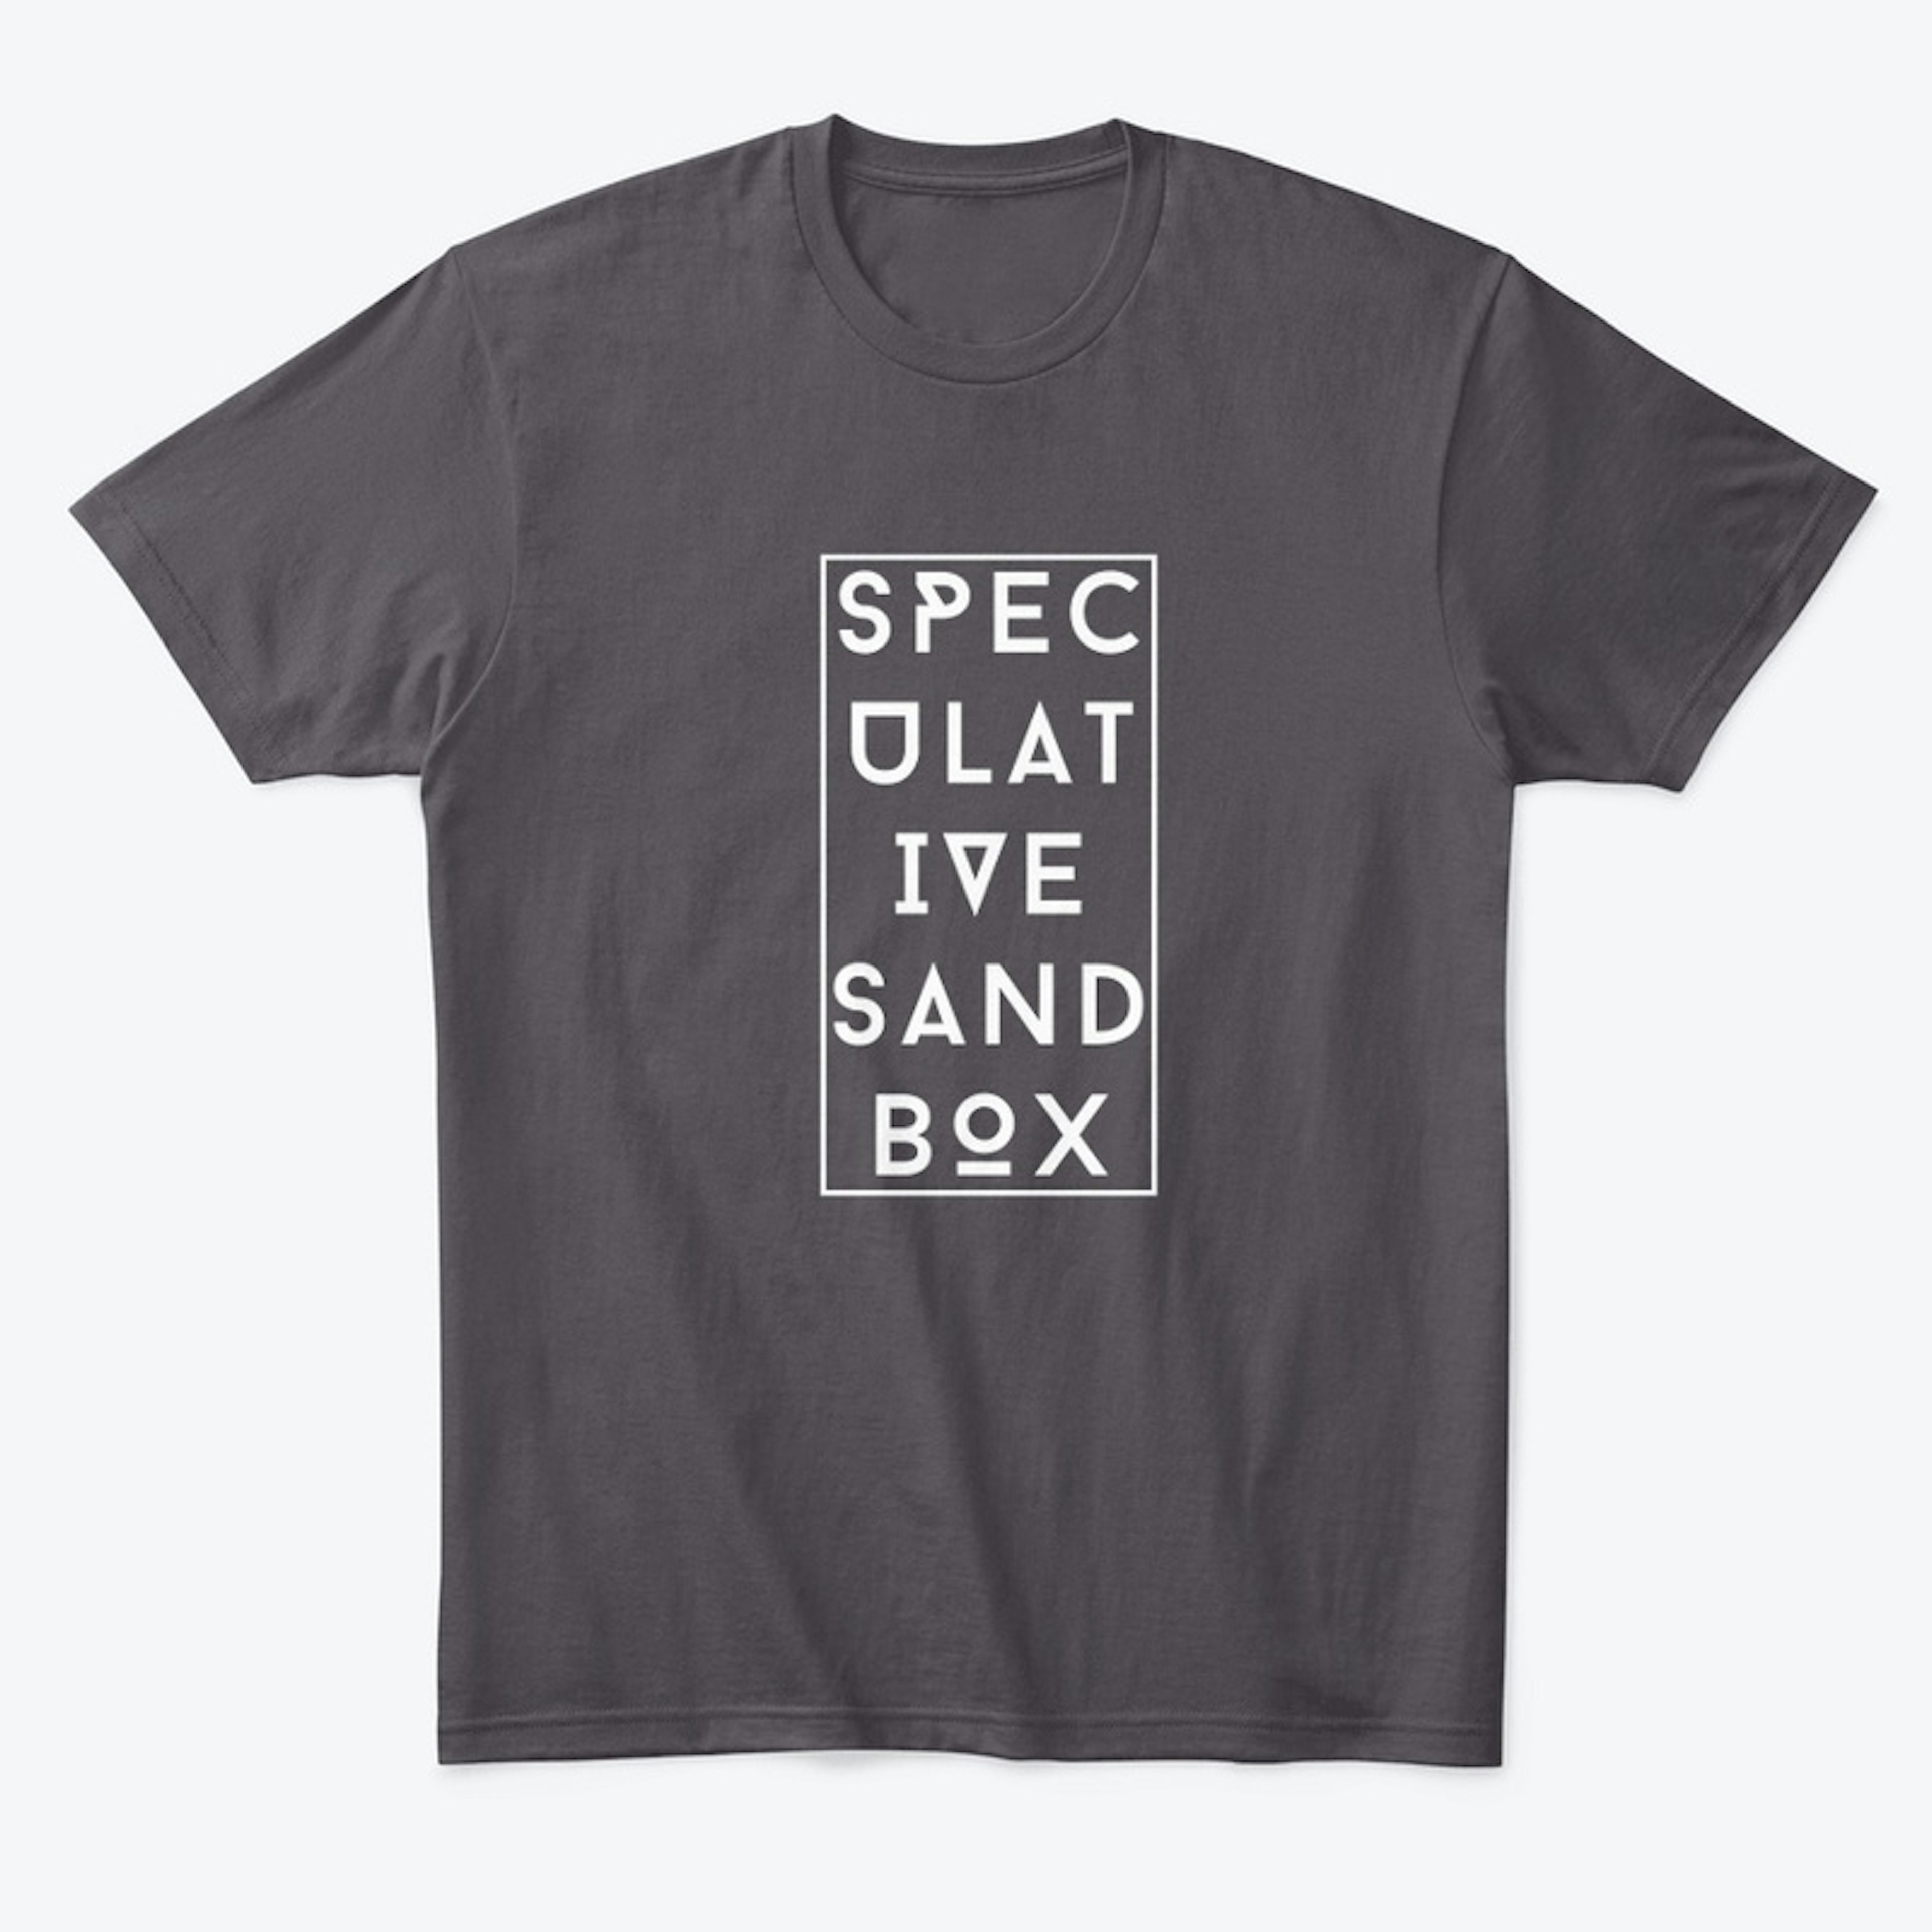 Speculative SandBOX - white text